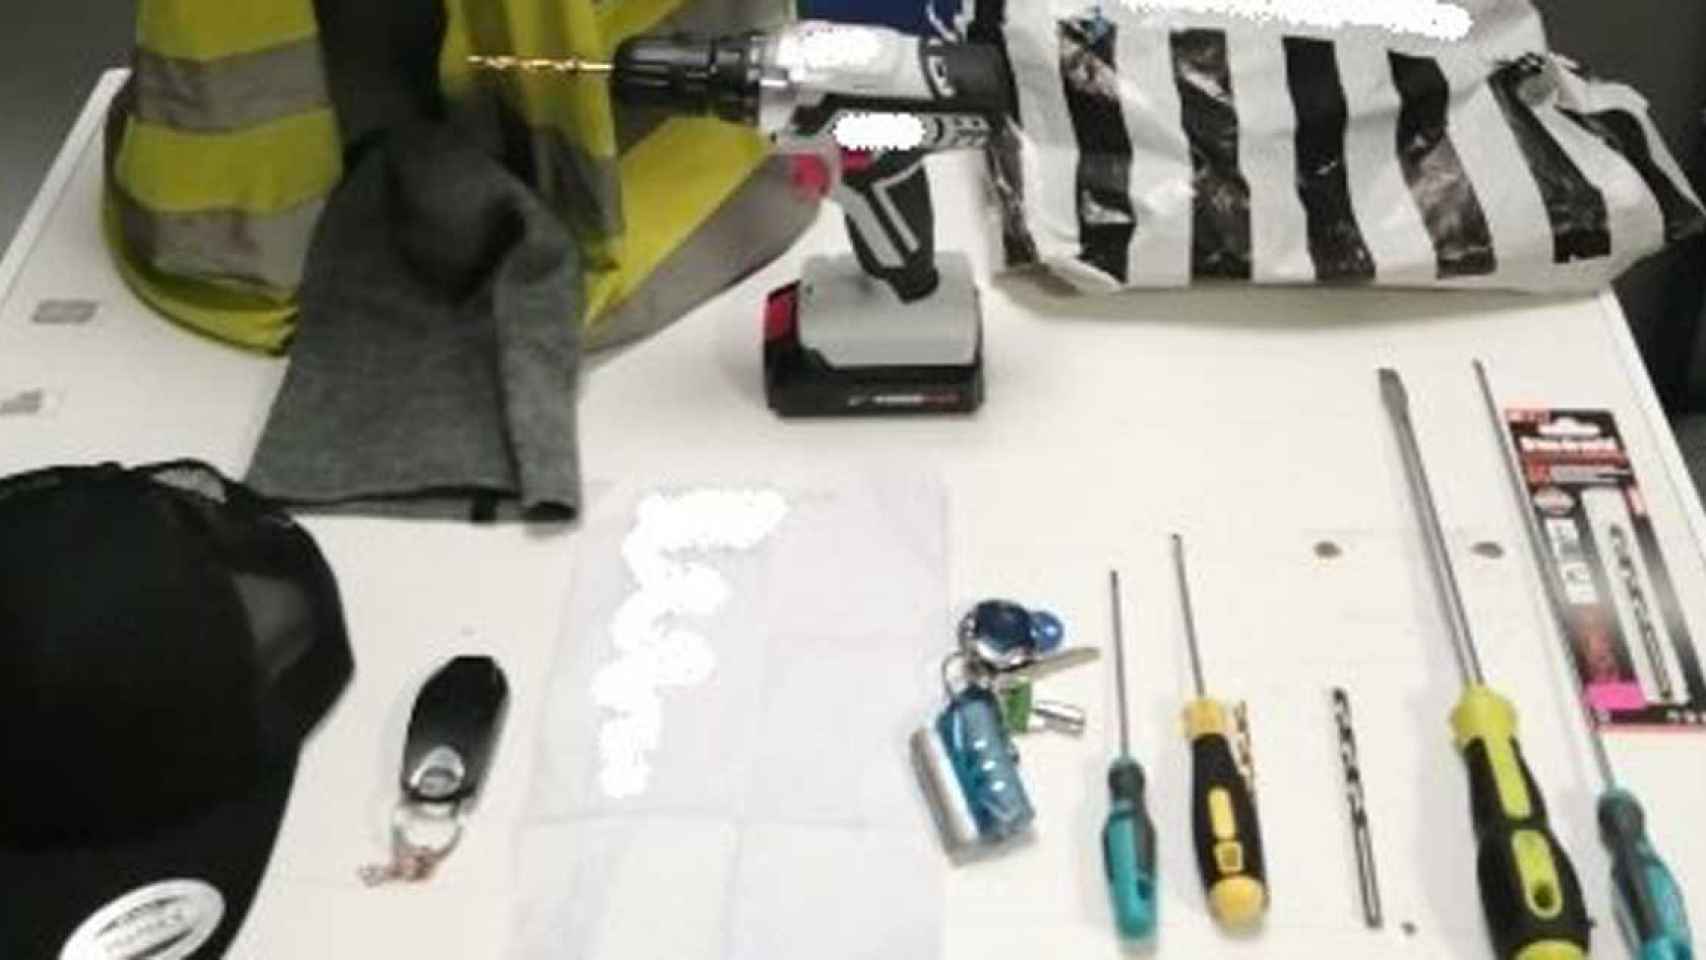 Los mossos se incautaron de varias herramientas que los dos ladrones utilizaron para robar en el interior de la furgoneta el día de Nochebuena / MOSSOS